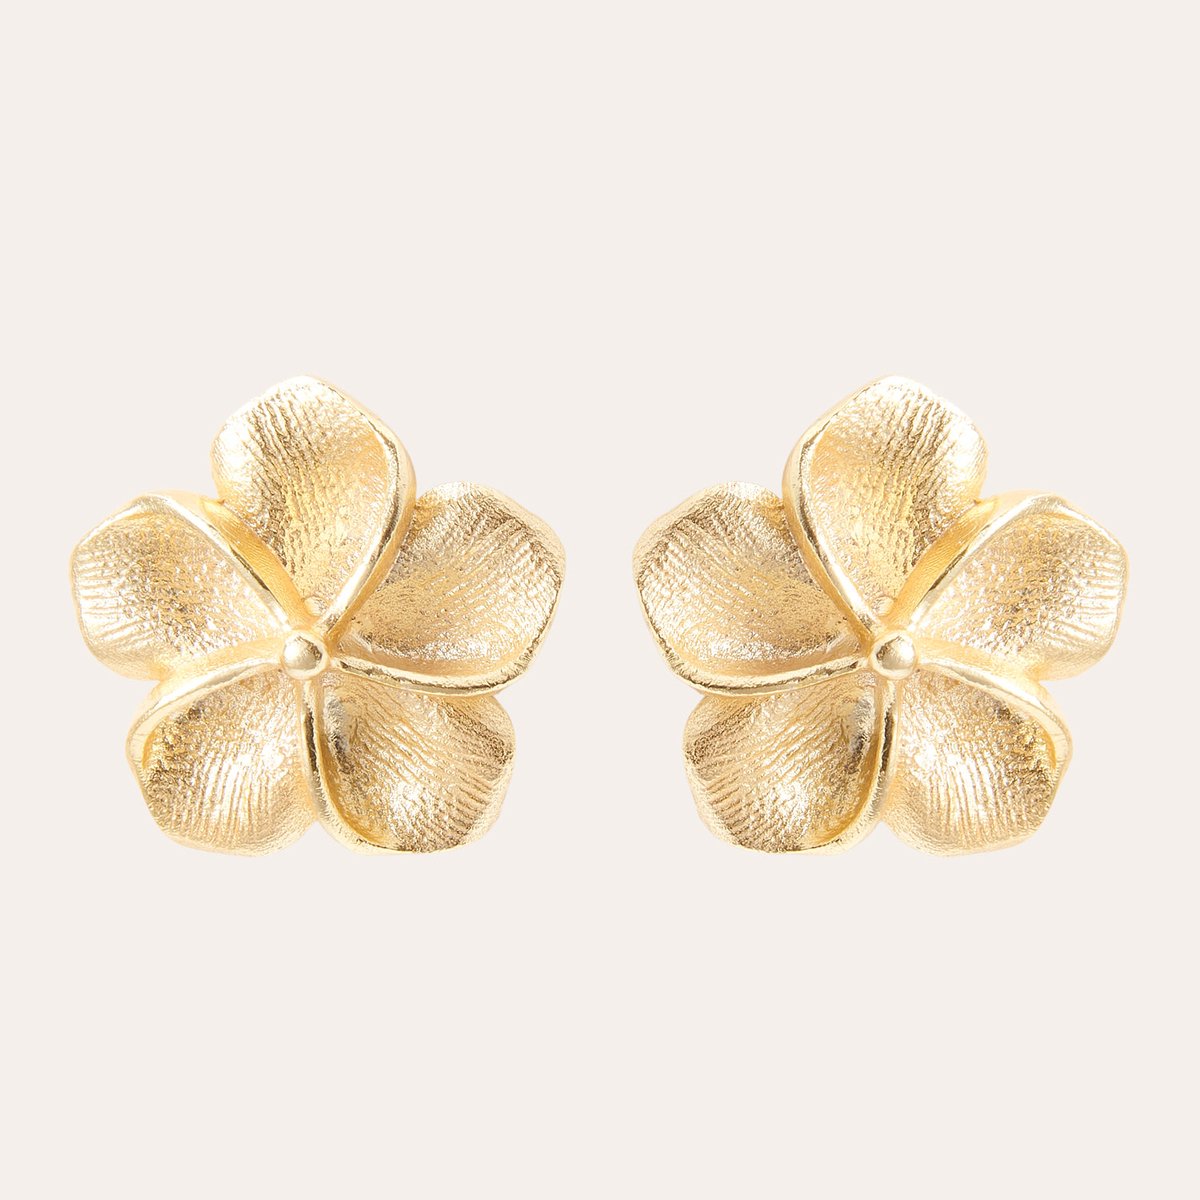 Le Rêve Amsterdam Oorbellen met bloem - goud verguld - oorknopje